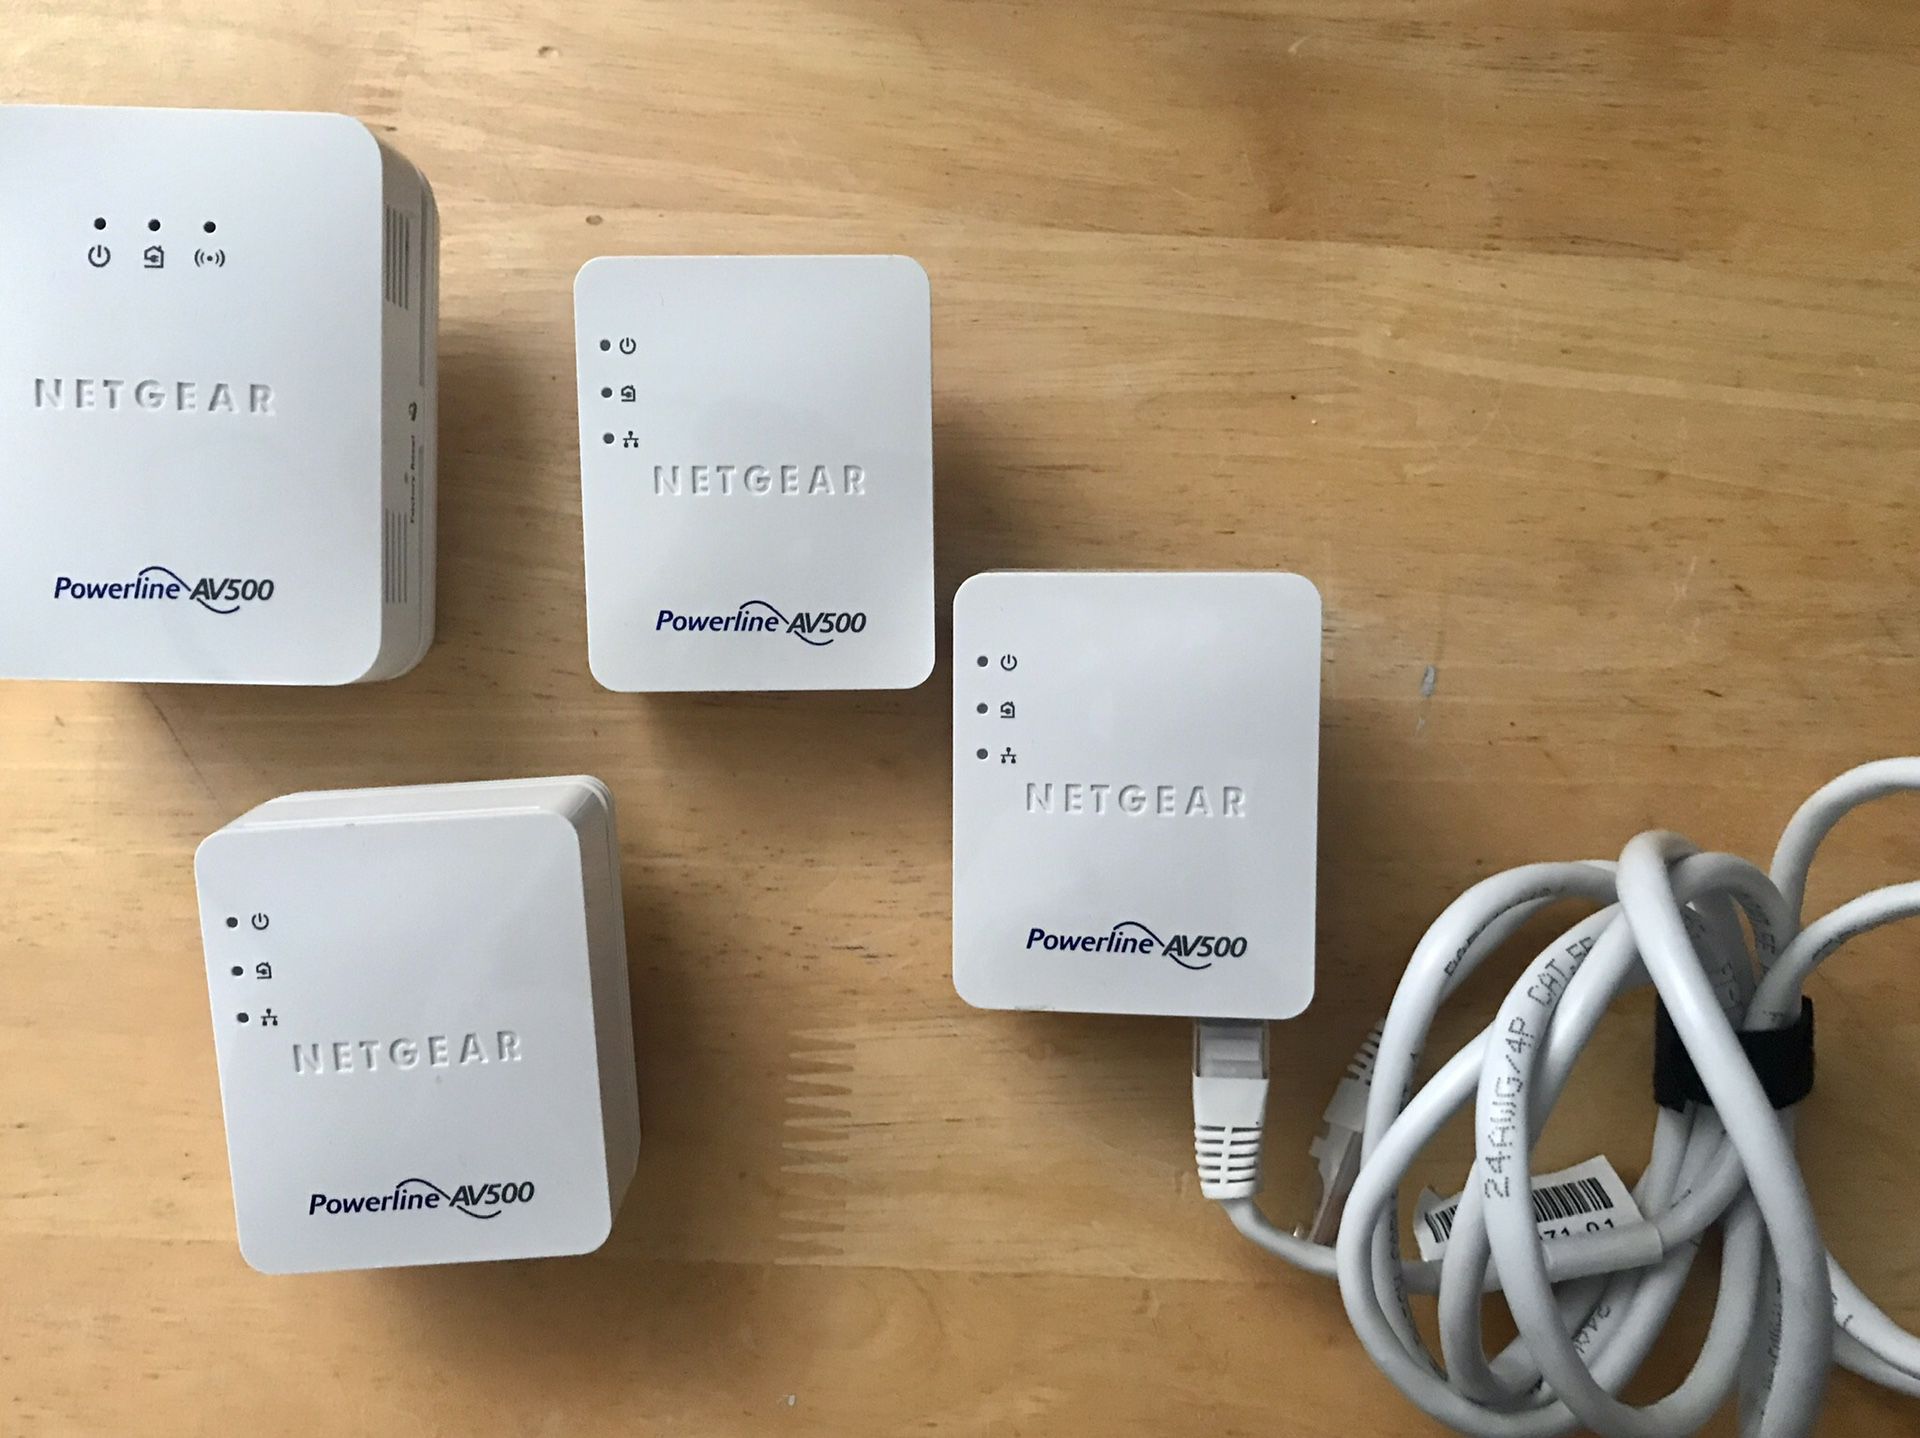 Netgear (Pending) Powerline AV500 WiFi range extenders